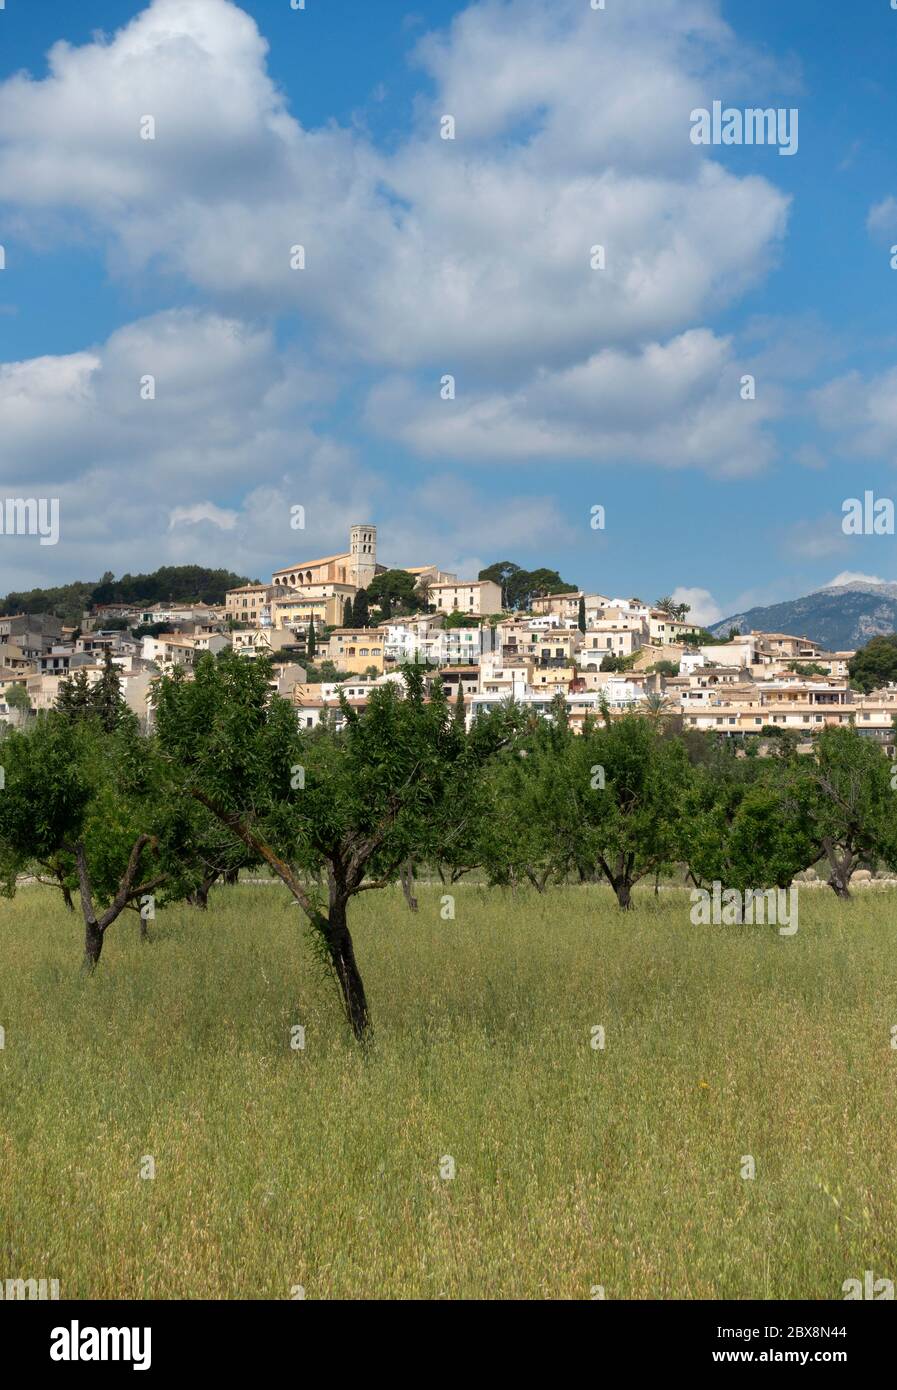 Selva village.Mallorca island.Spain Stock Photo